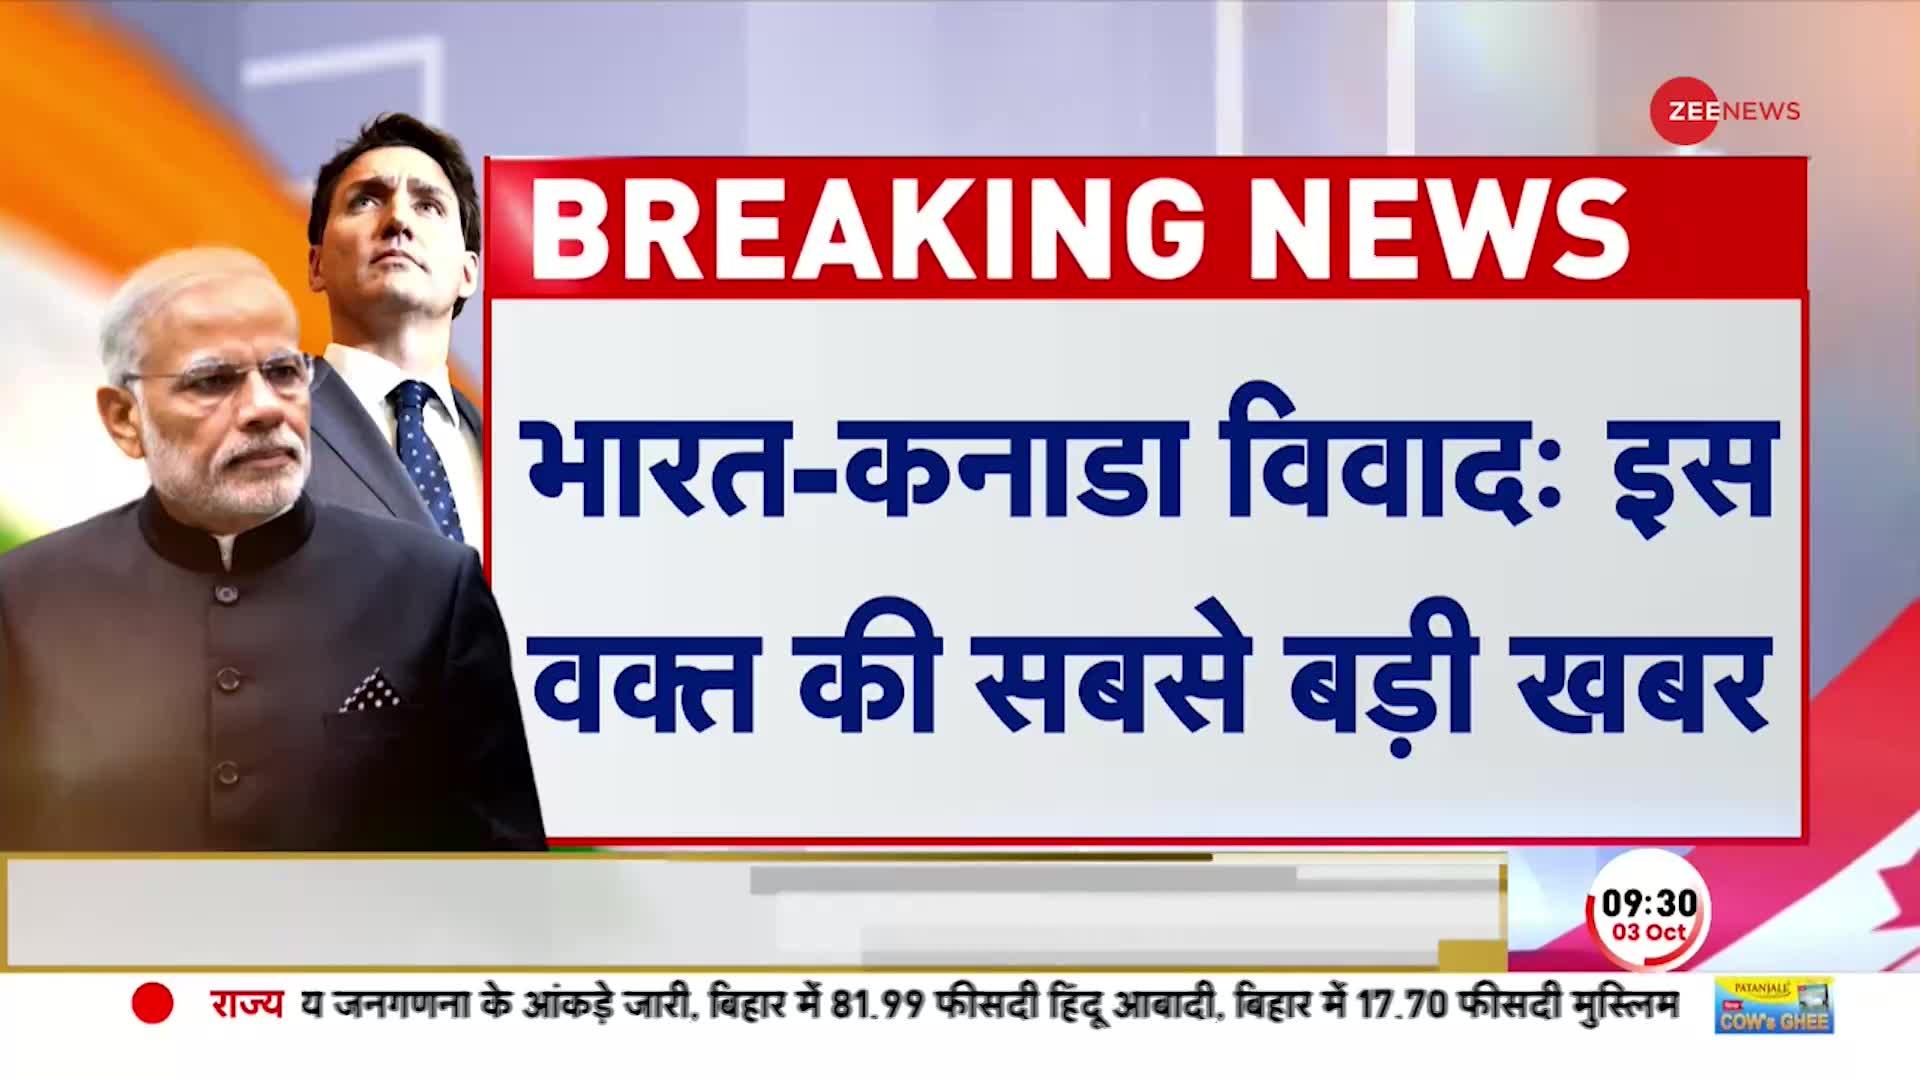 Breaking News: भारत सरकार ने ट्रूडो सरकार को दिया अल्टिमेटम